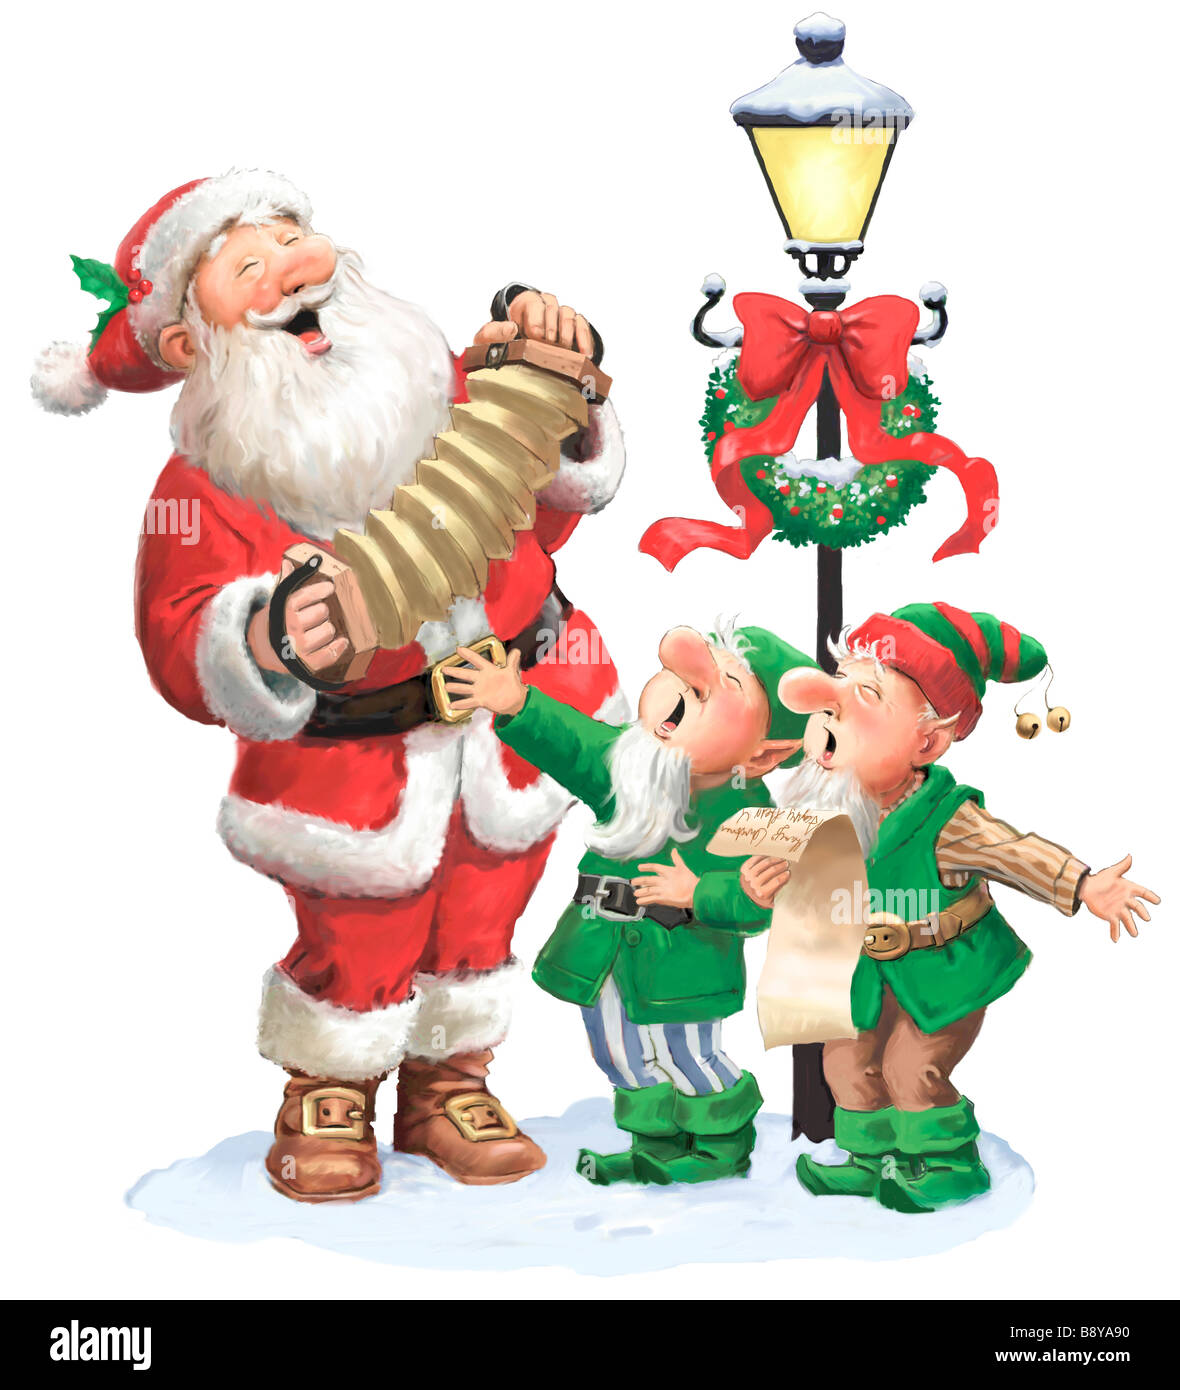 Weihnachtsmann Ausgeschnittene Stockfotos und -bilder - Alamy